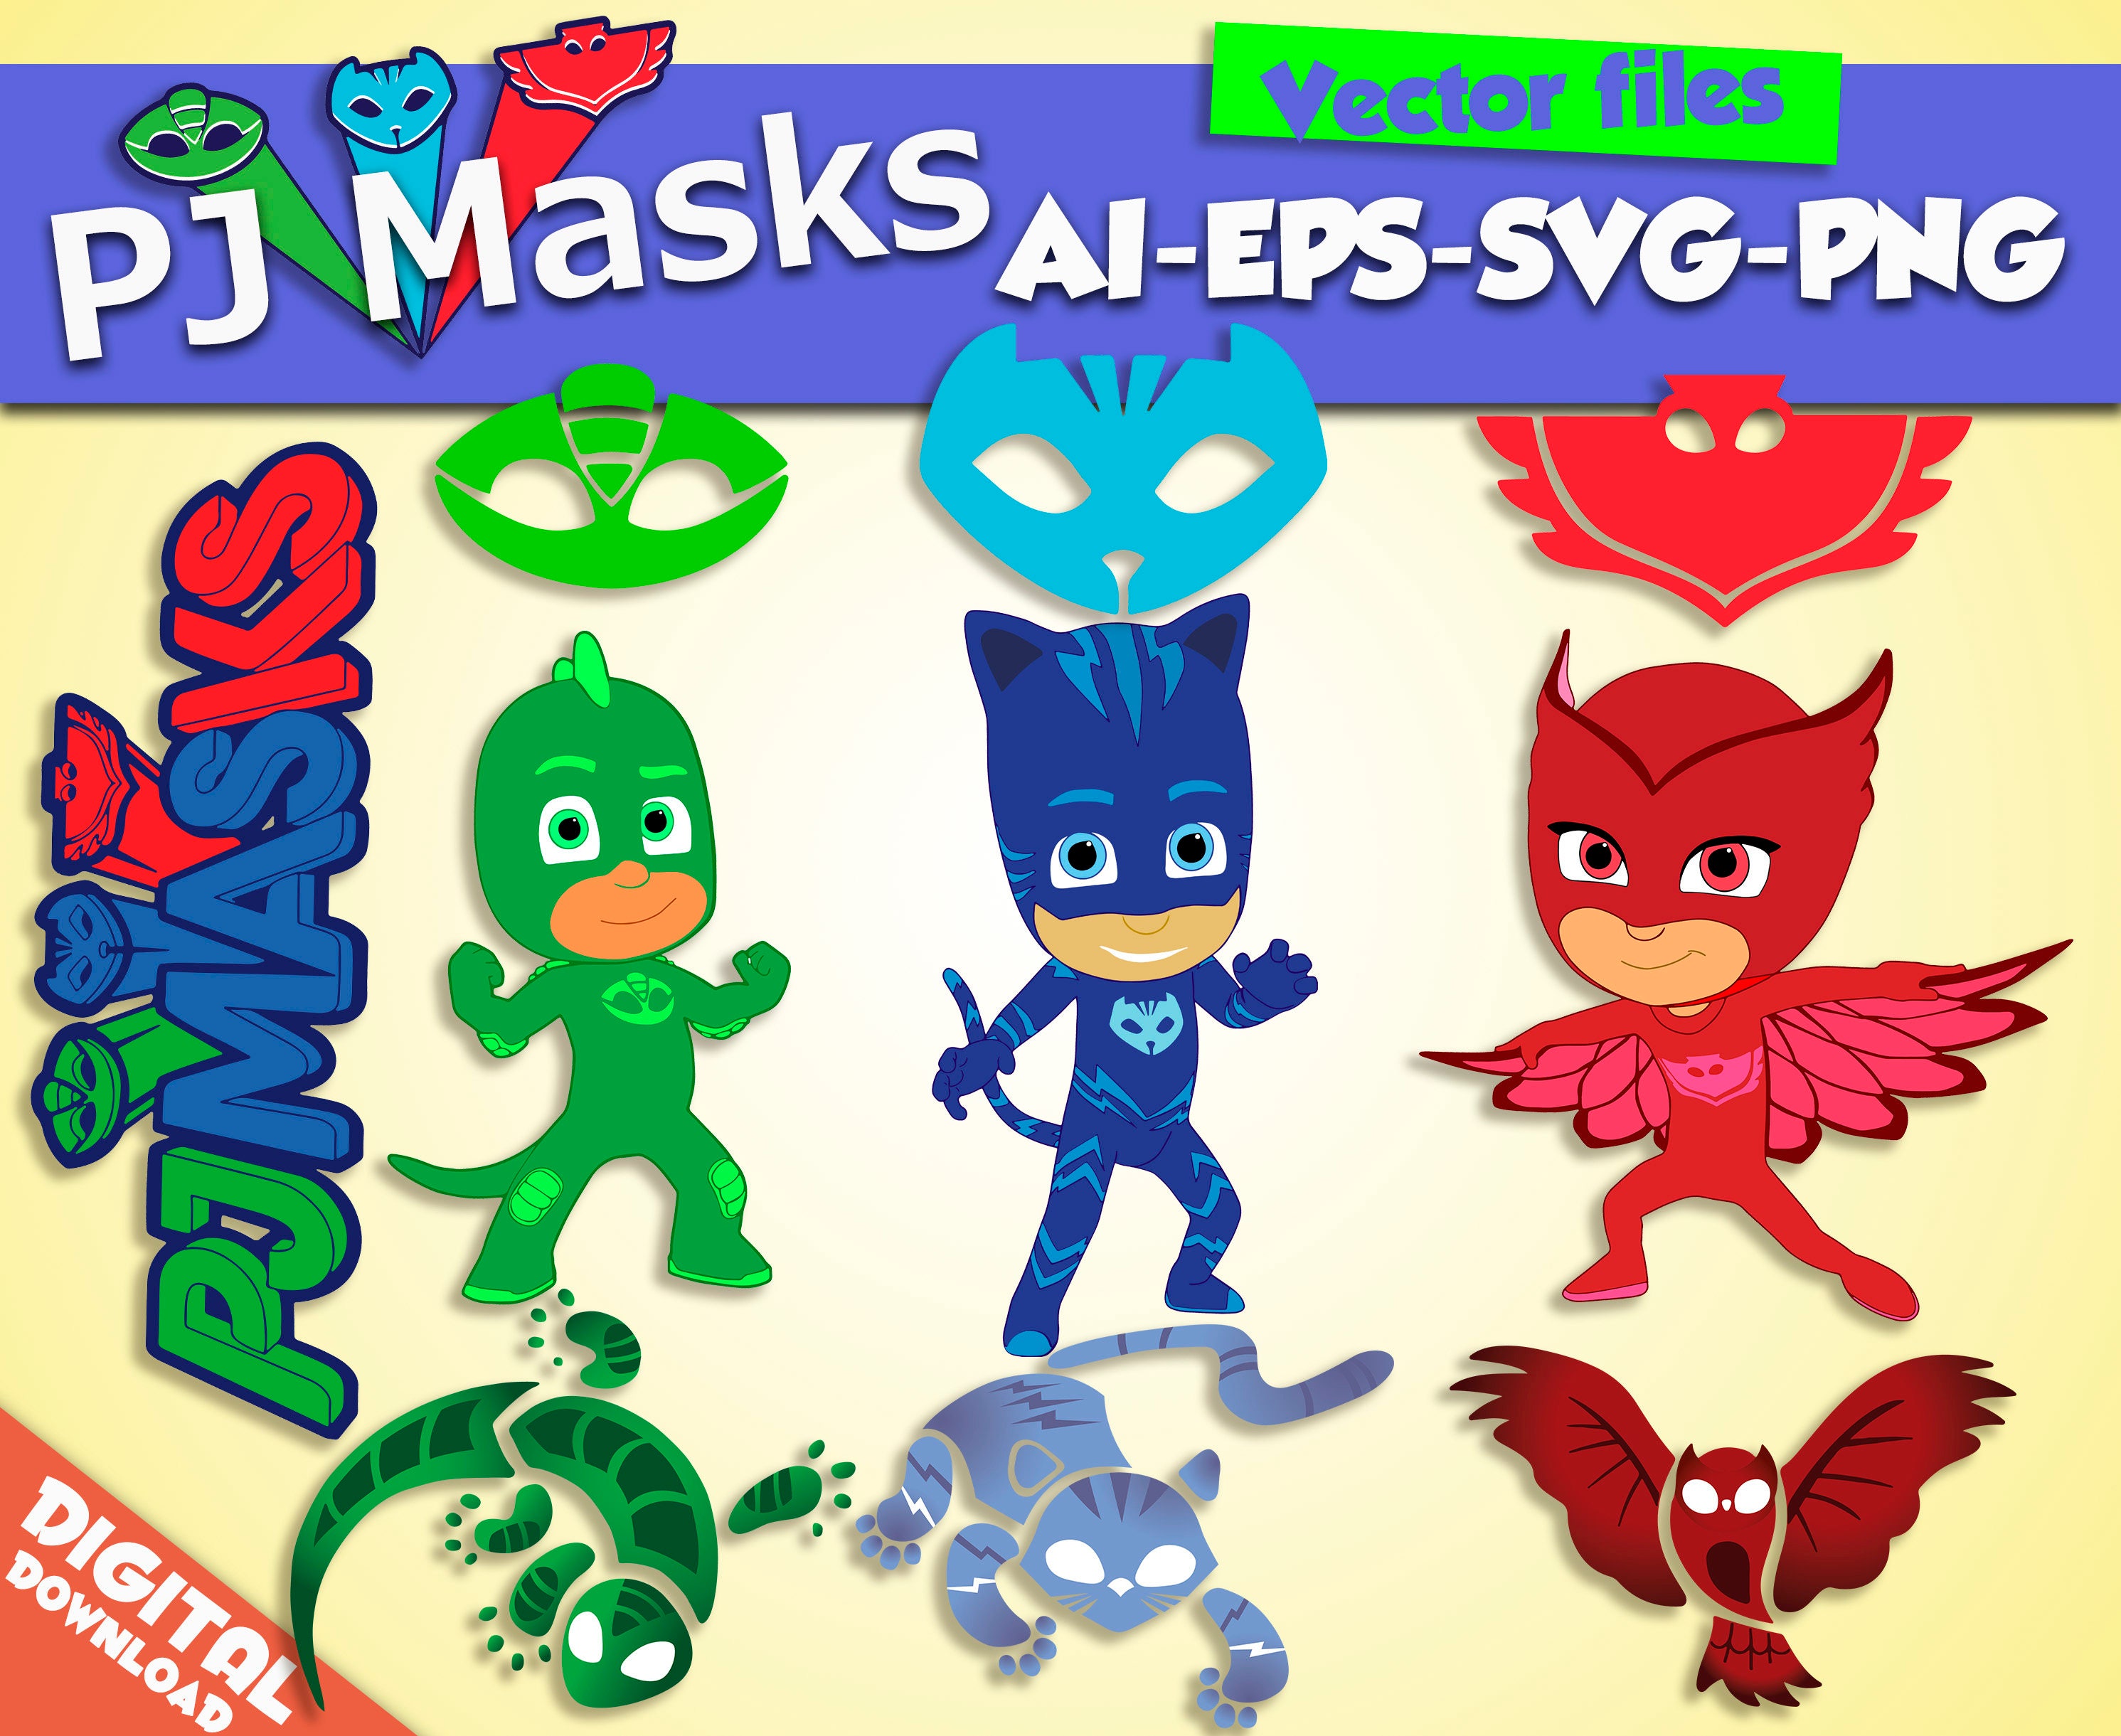 Download PJ masks SVG png EPS Ai vector files Digital masks clipart